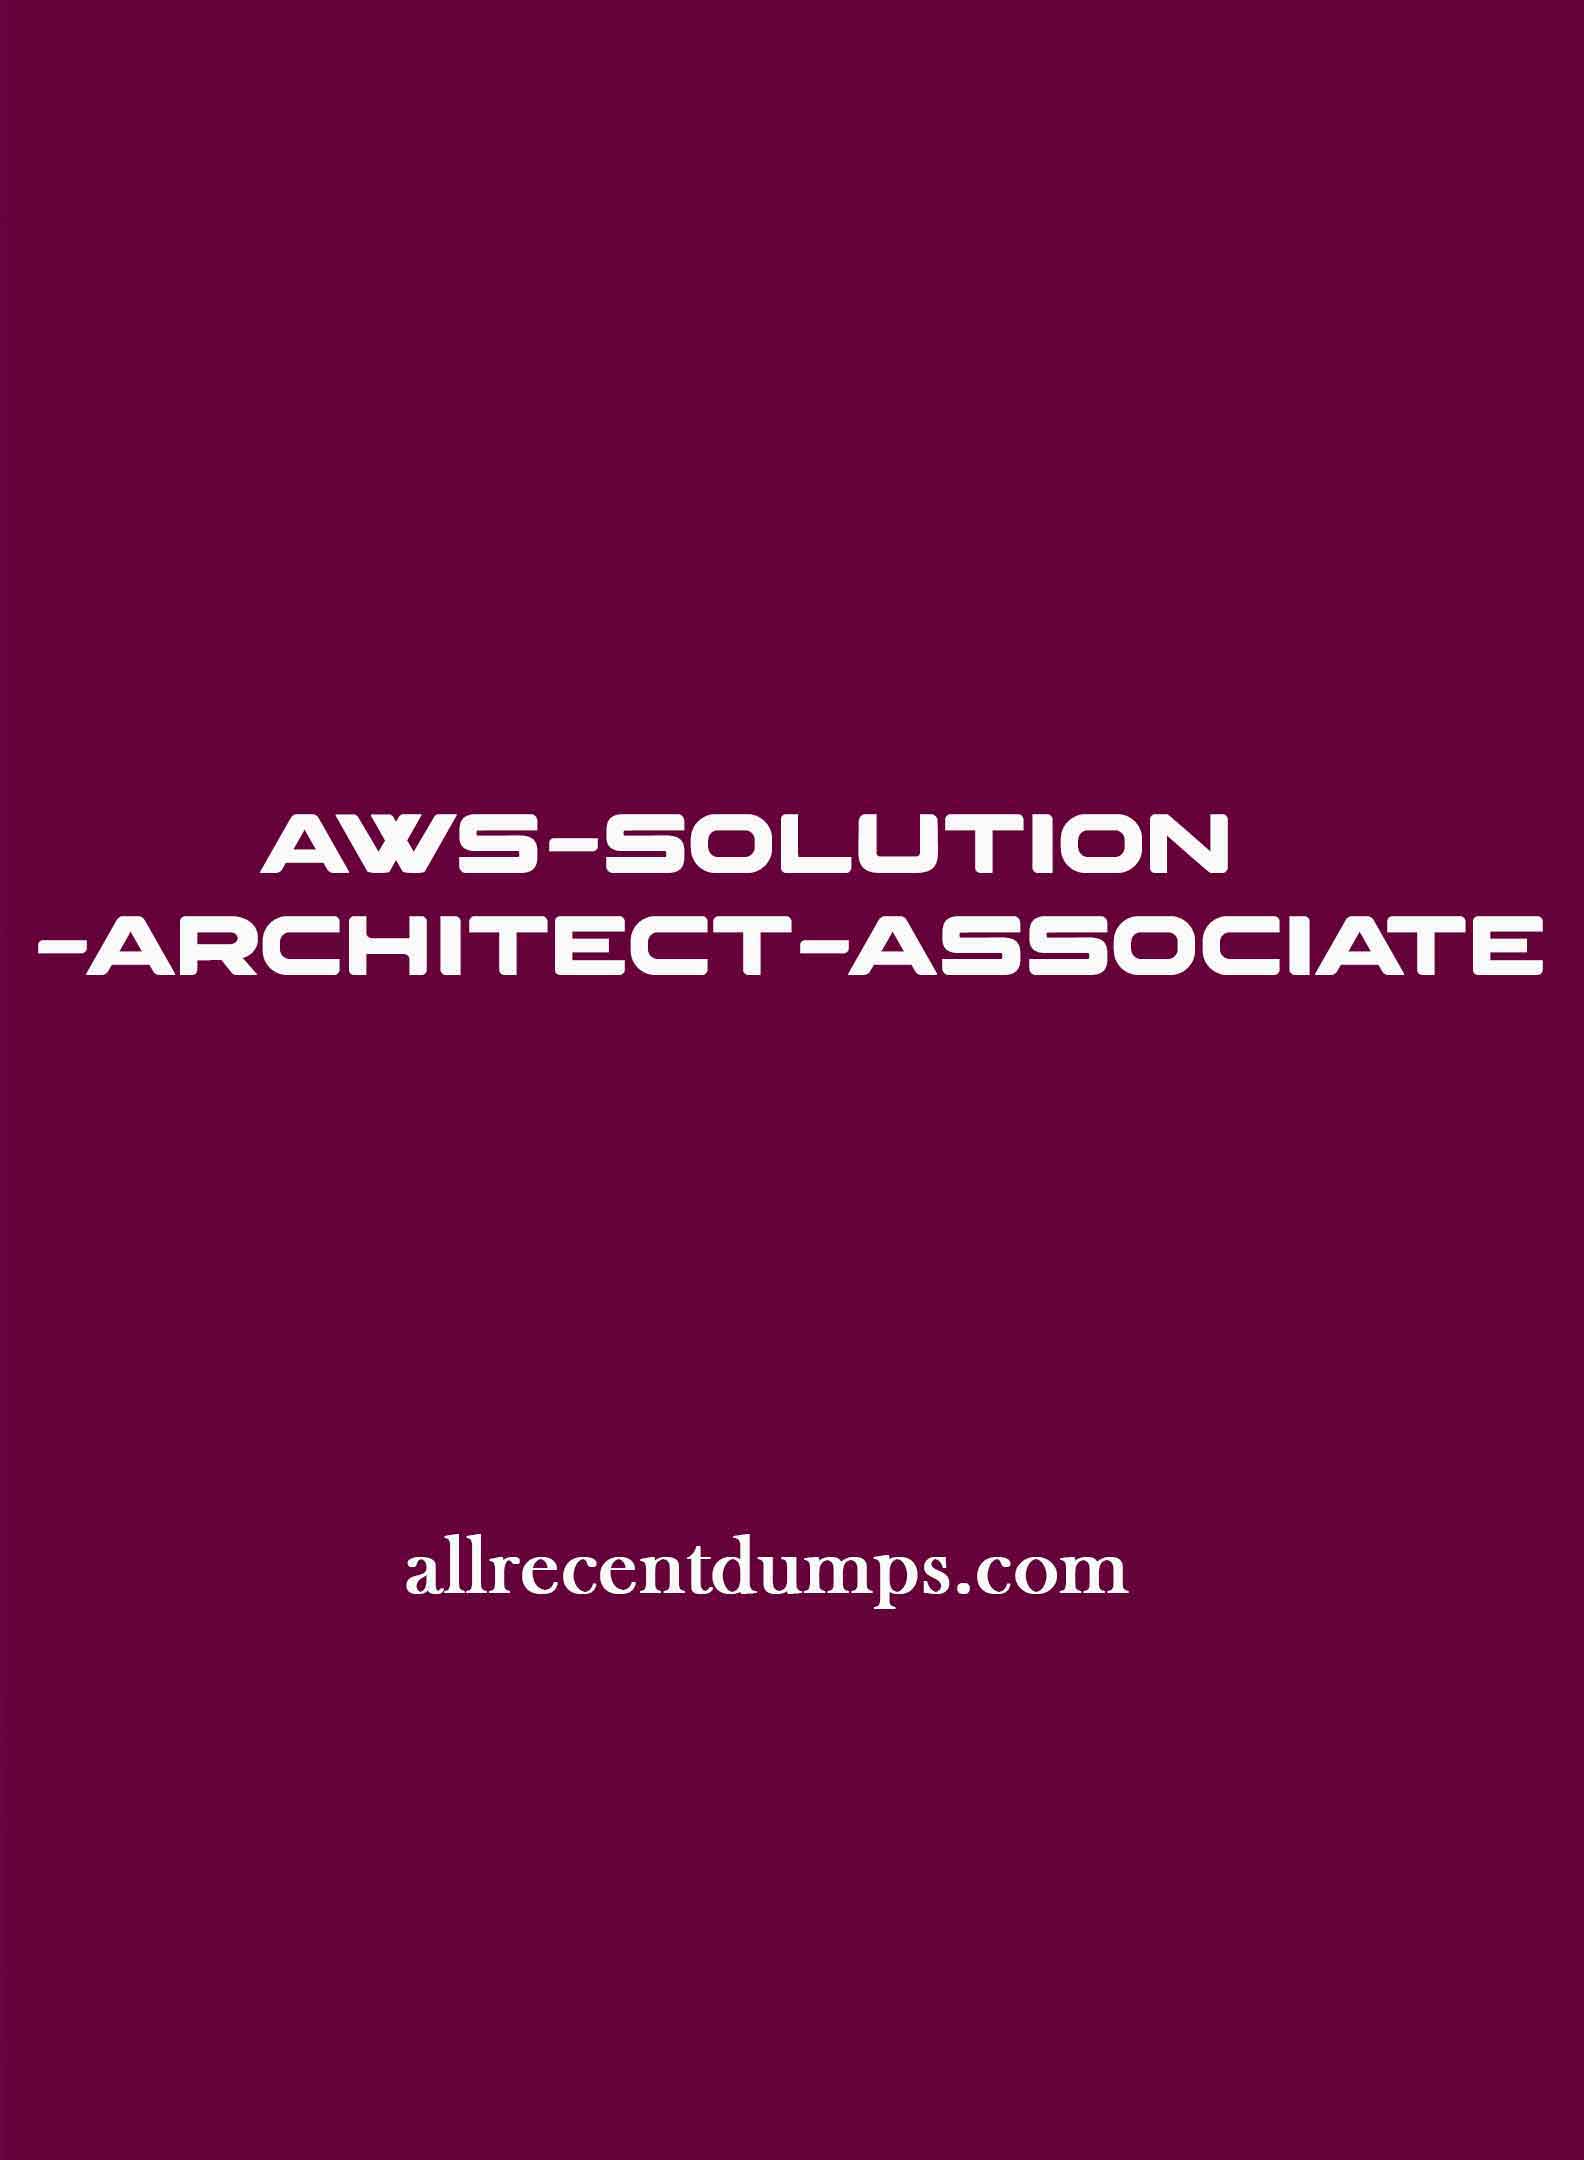 AWS Solution Architect Associate Dumps